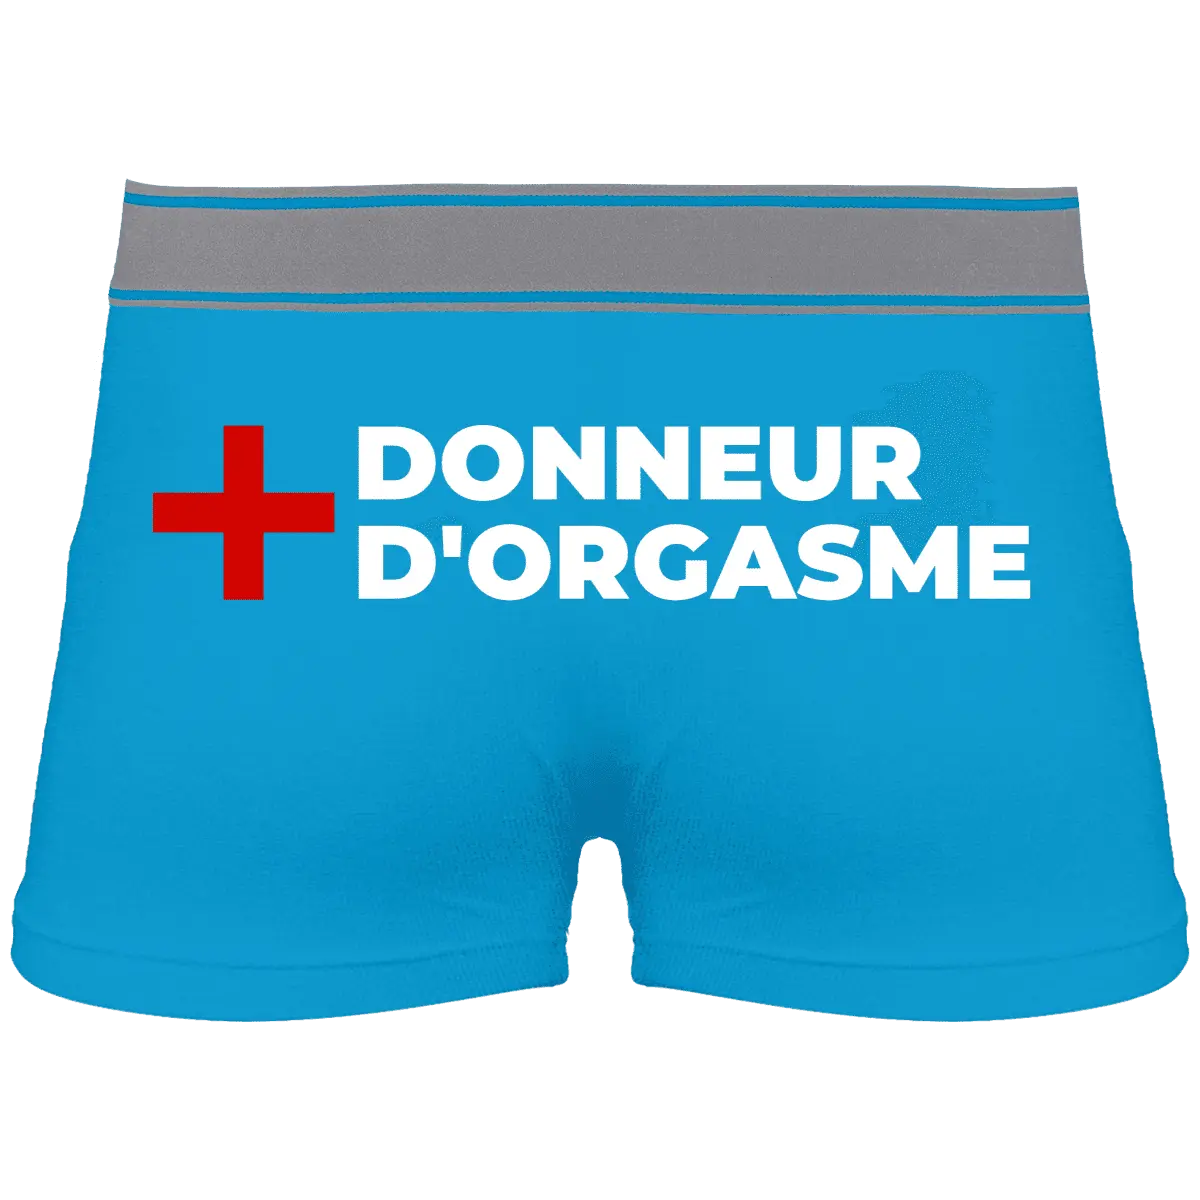 Caleçon "Donneur d'orgasme" - French Humour